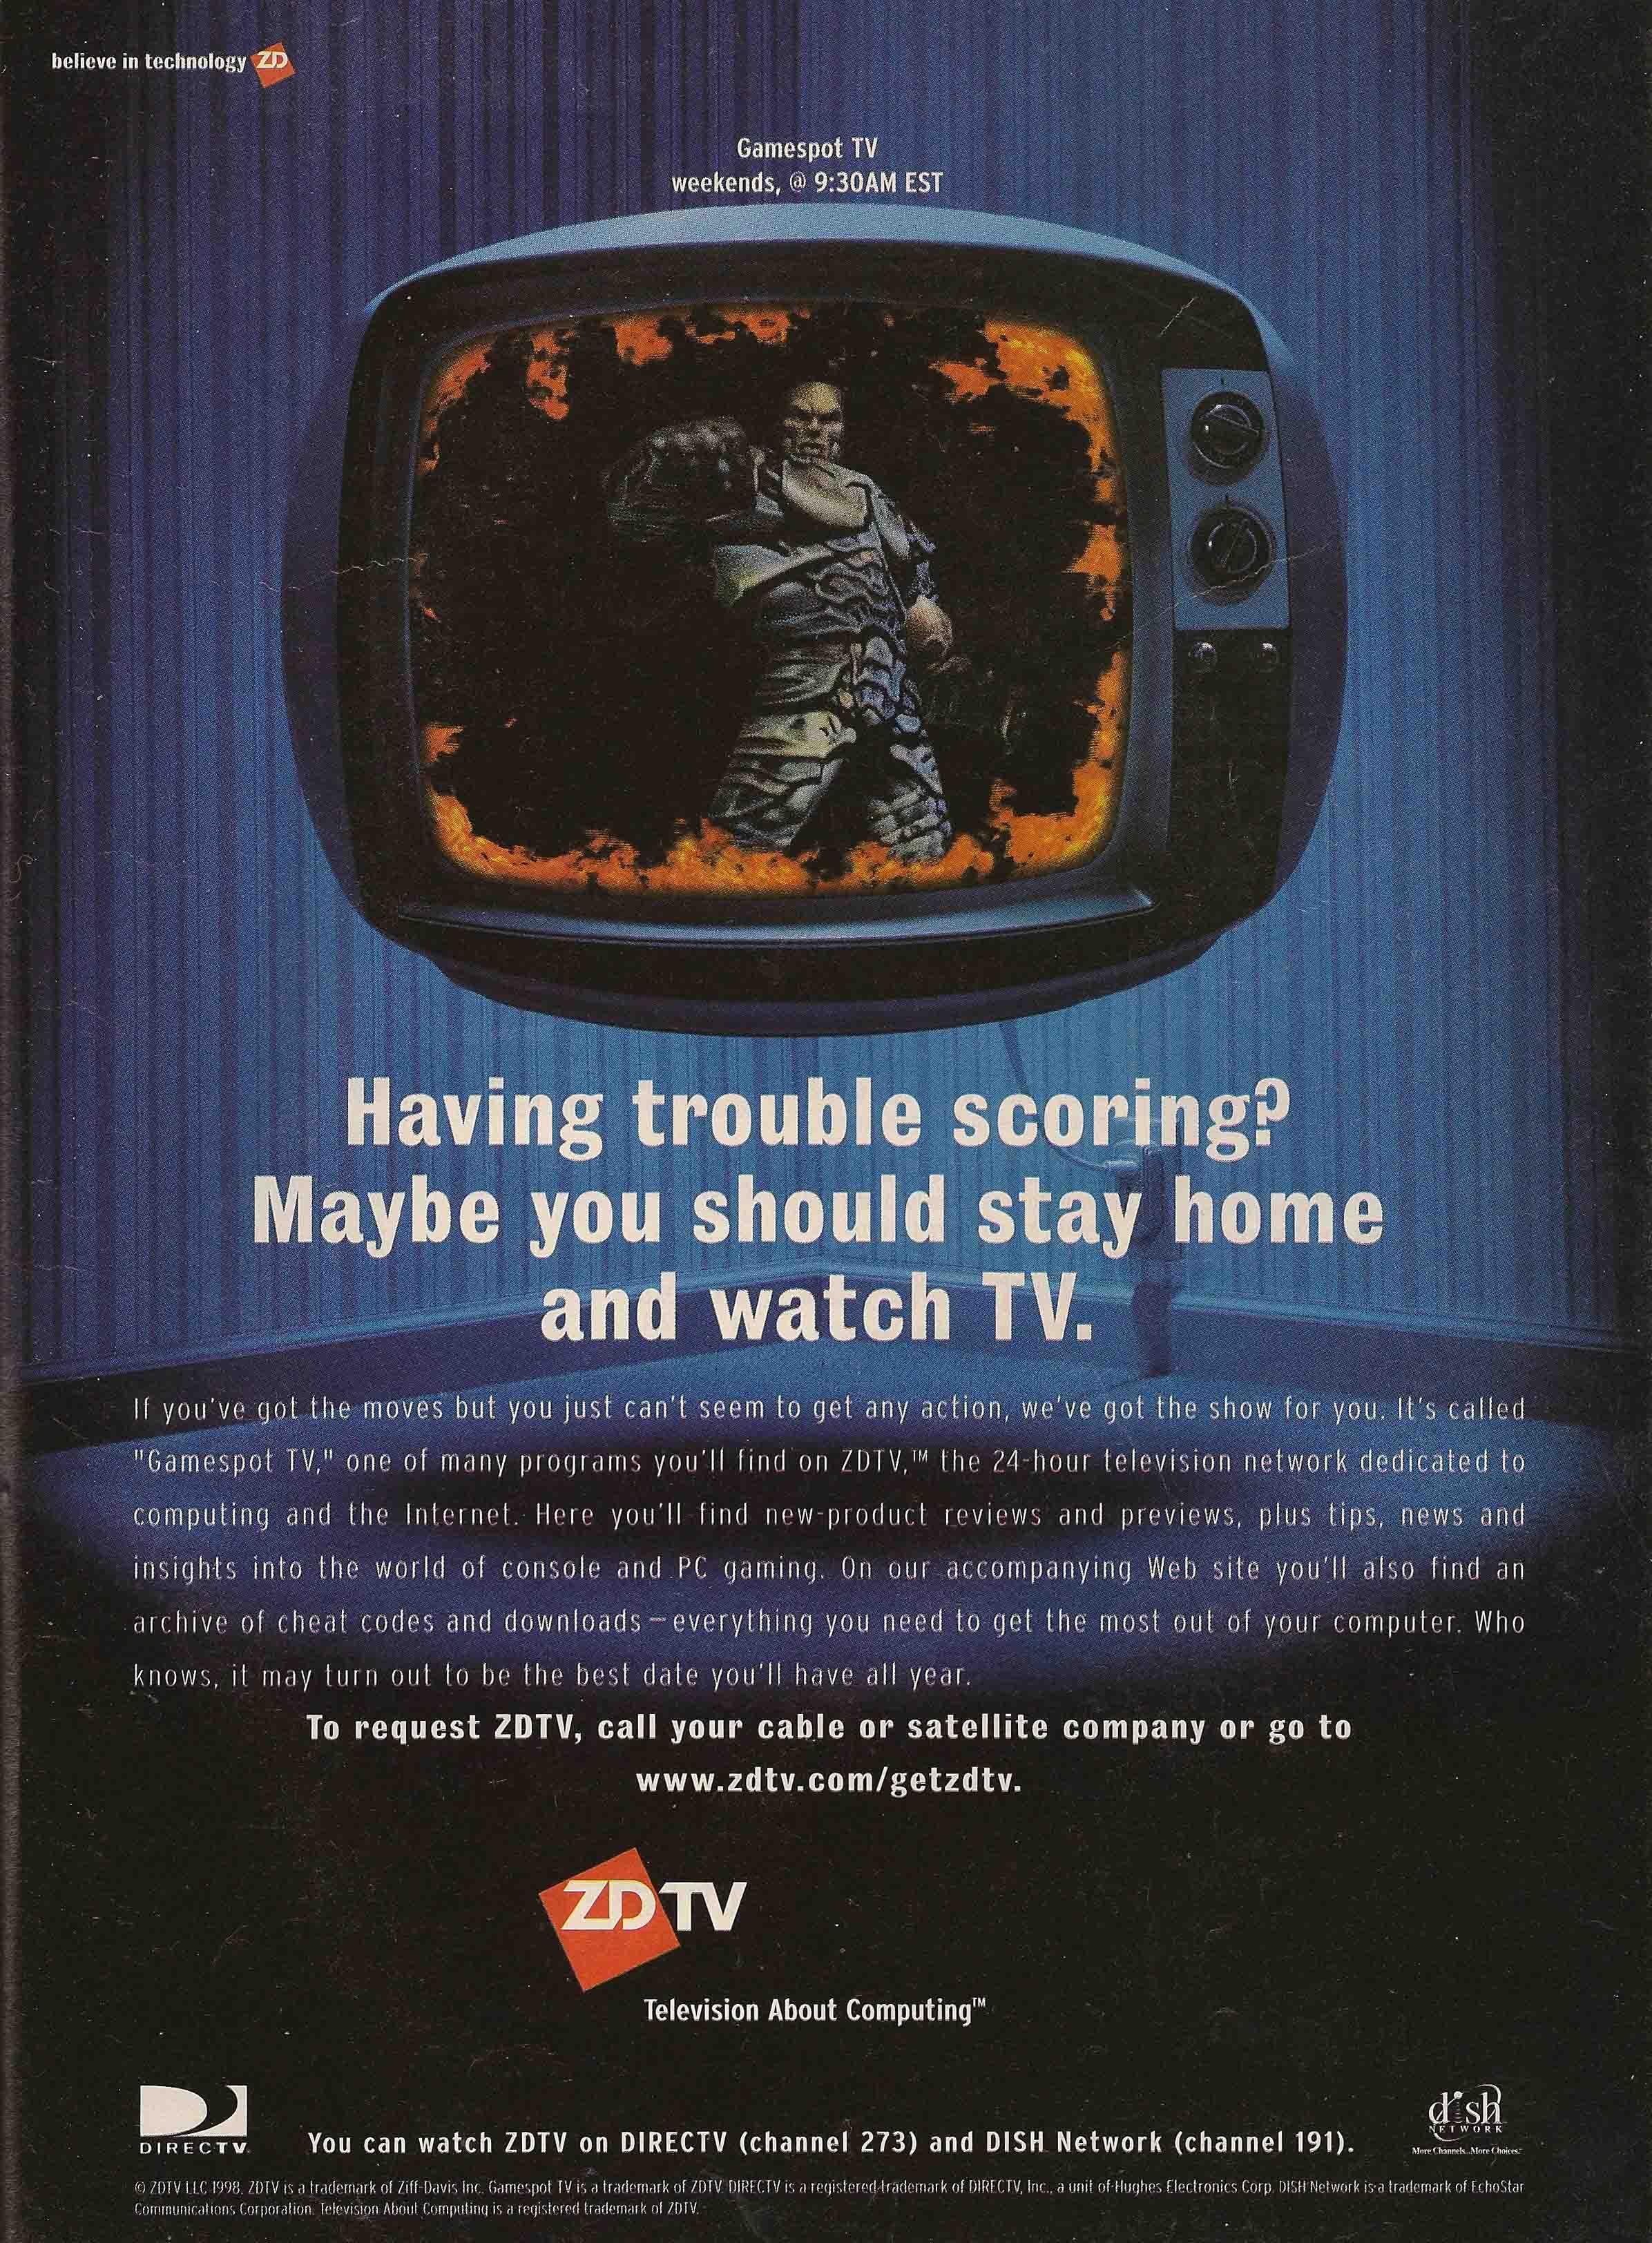 Ad for Gamespot TV on ZD (Ziff-Davis) TV